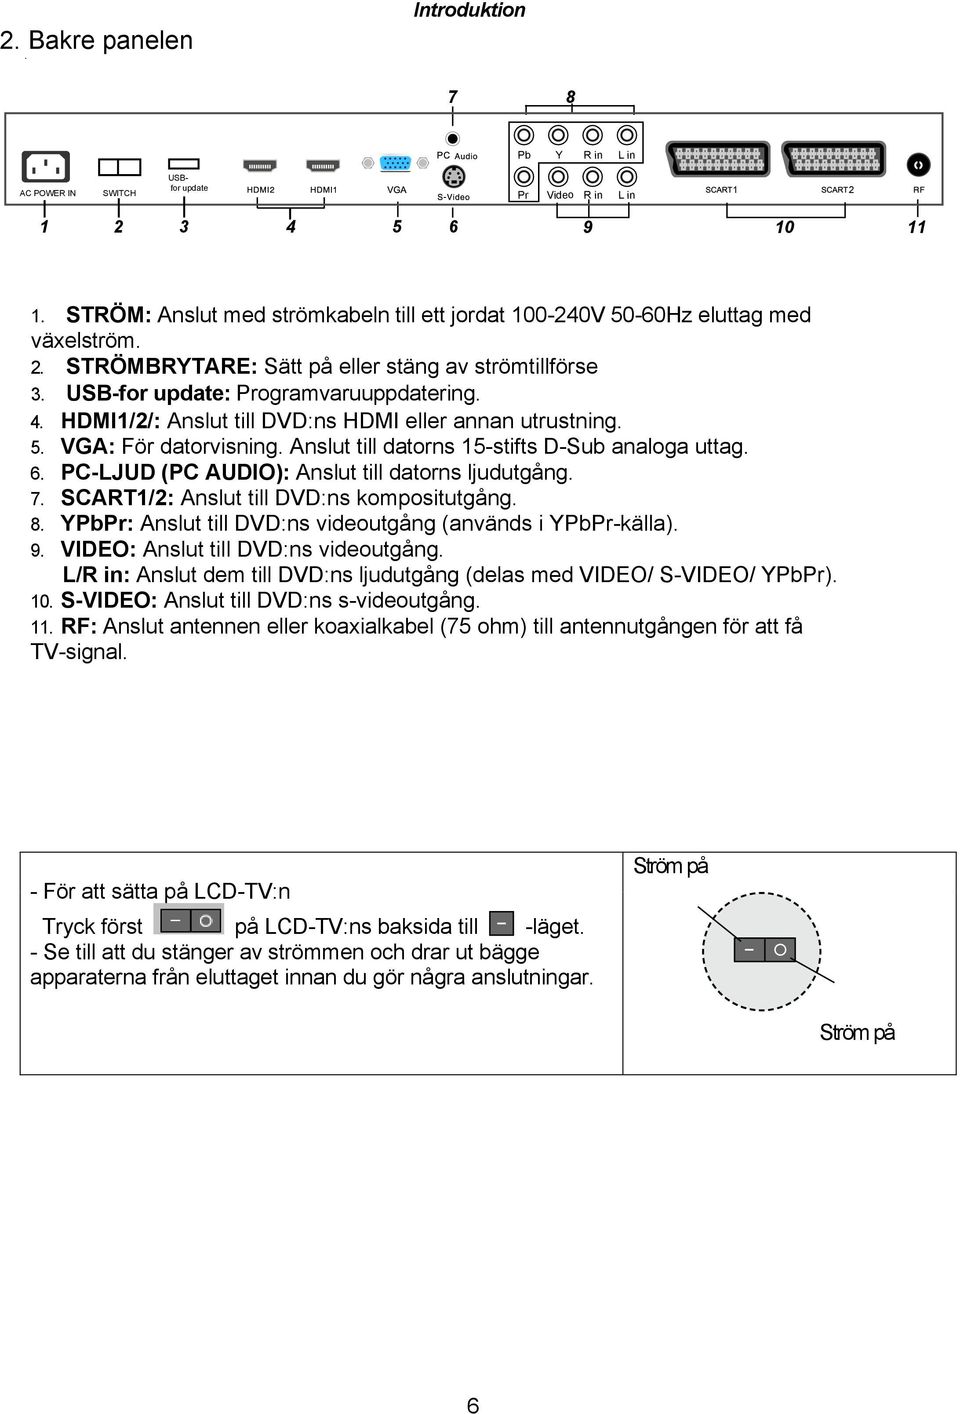 HDMI1/2/: Anslut till DVD:ns HDMI eller annan utrustning. 5. VGA: För datorvisning. Anslut till datorns 15-stifts D-Sub analoga uttag. 6. PC-LJUD (PC AUDIO): Anslut till datorns ljudutgång. 7.